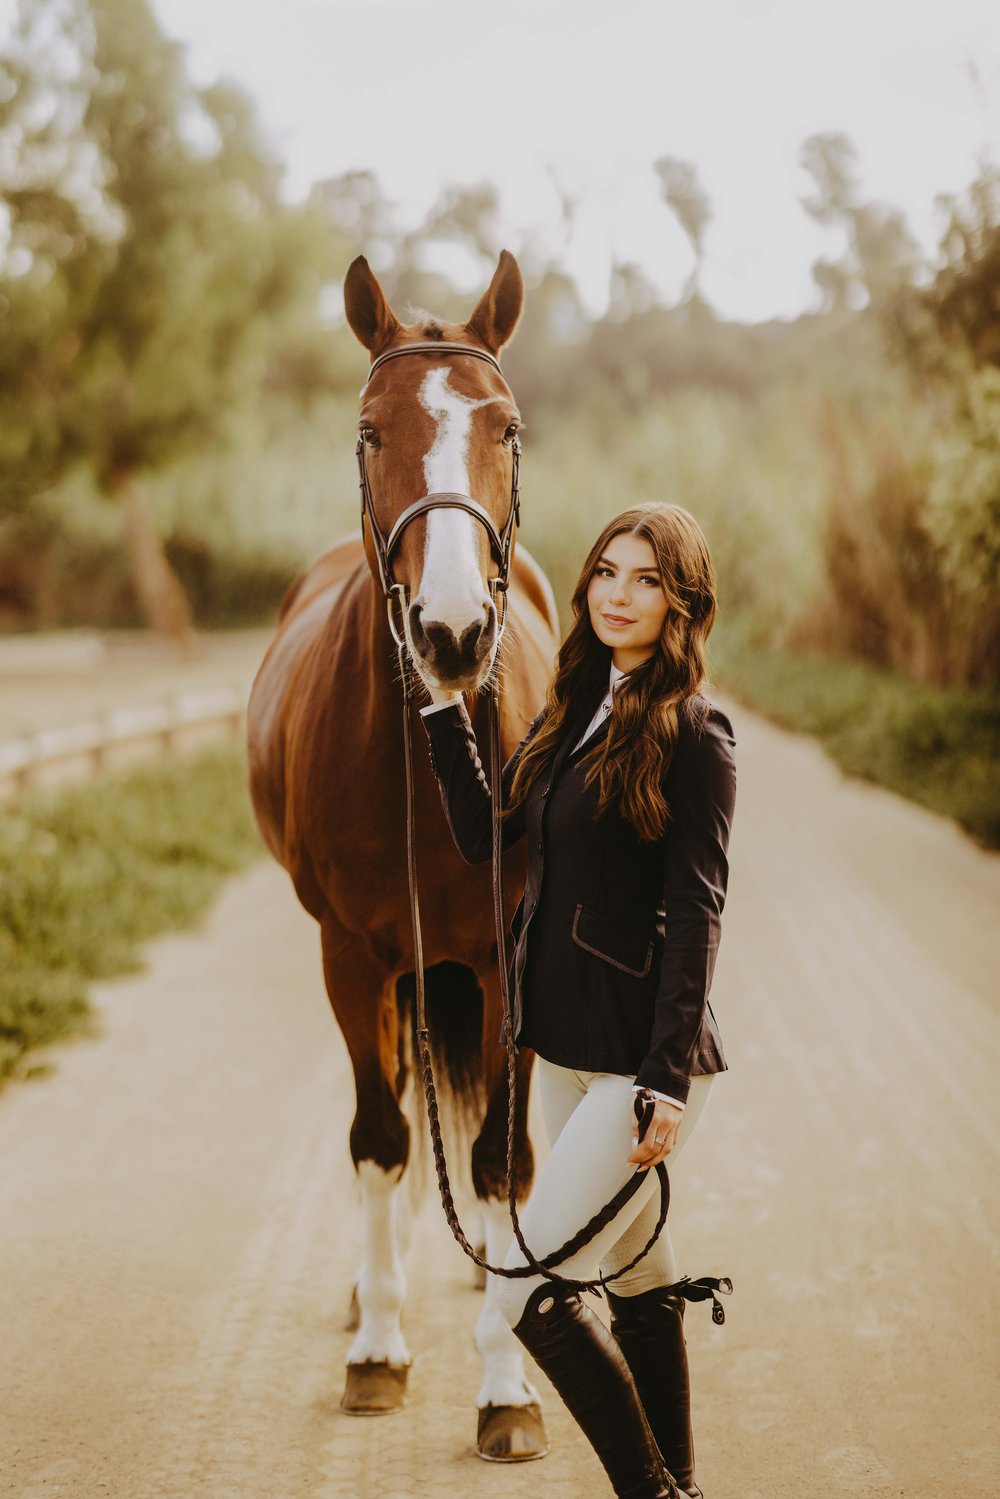  senior photos with a horse 